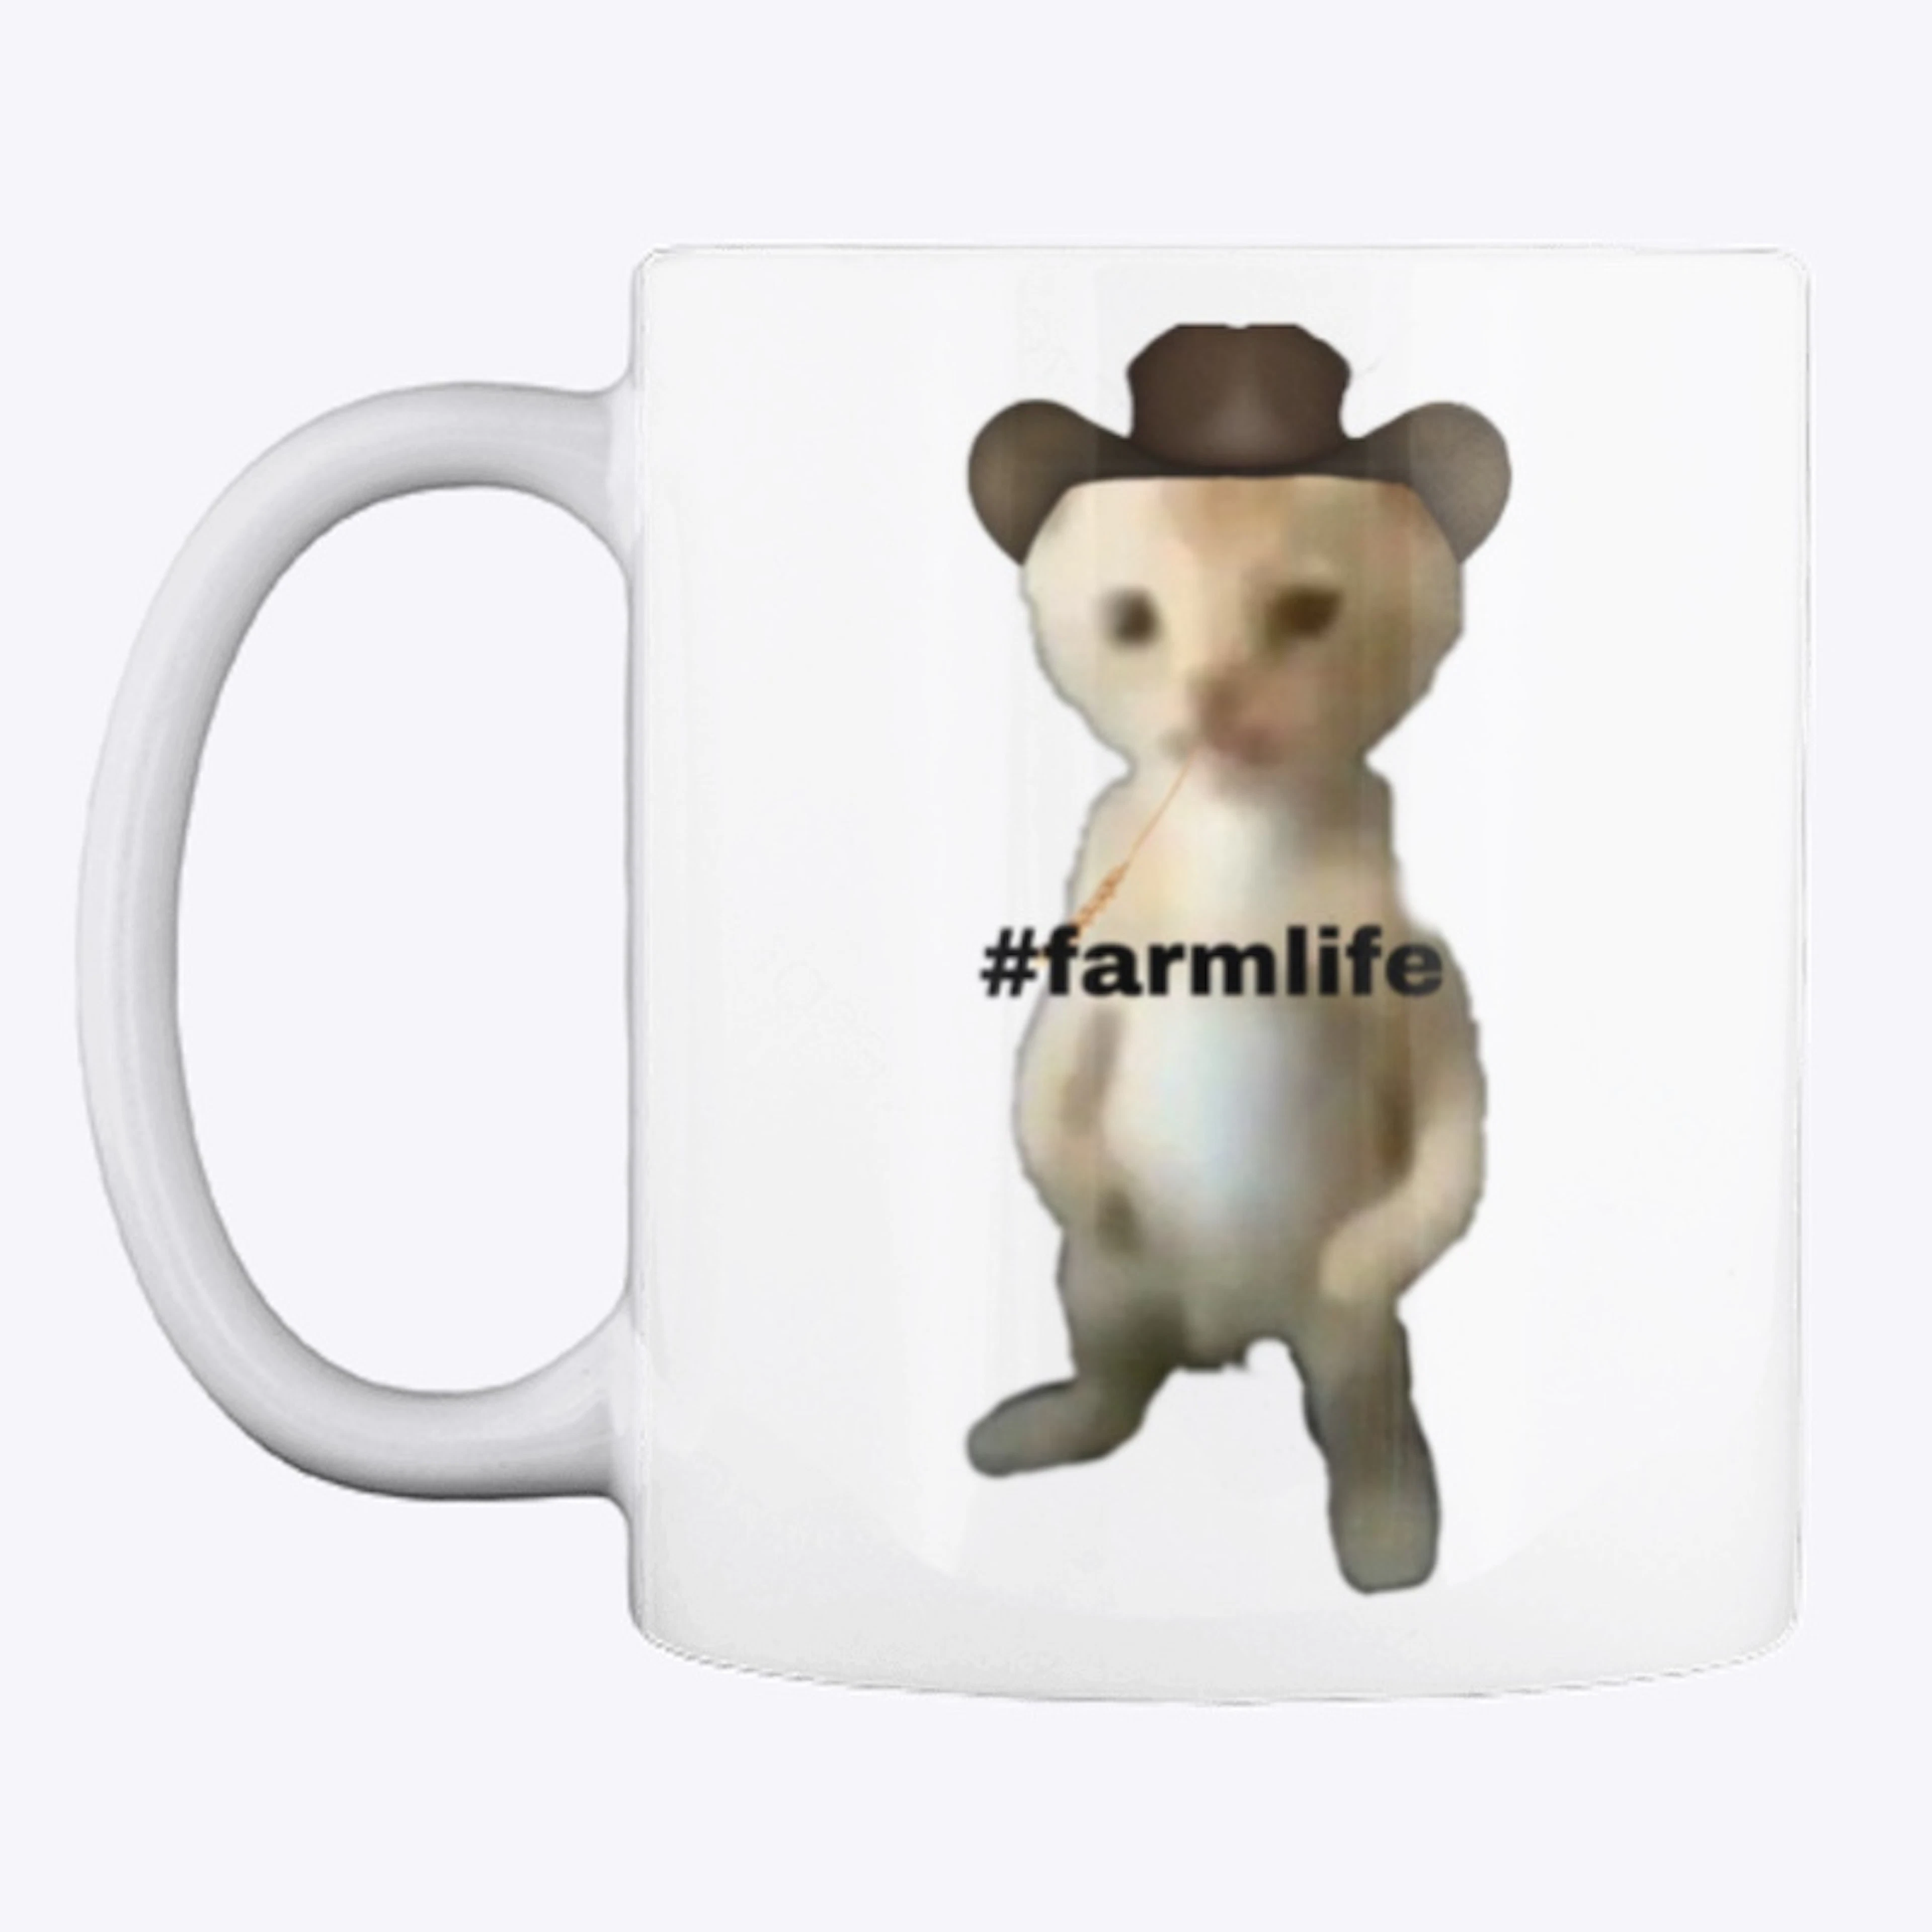 “#farmlife” farmer cat